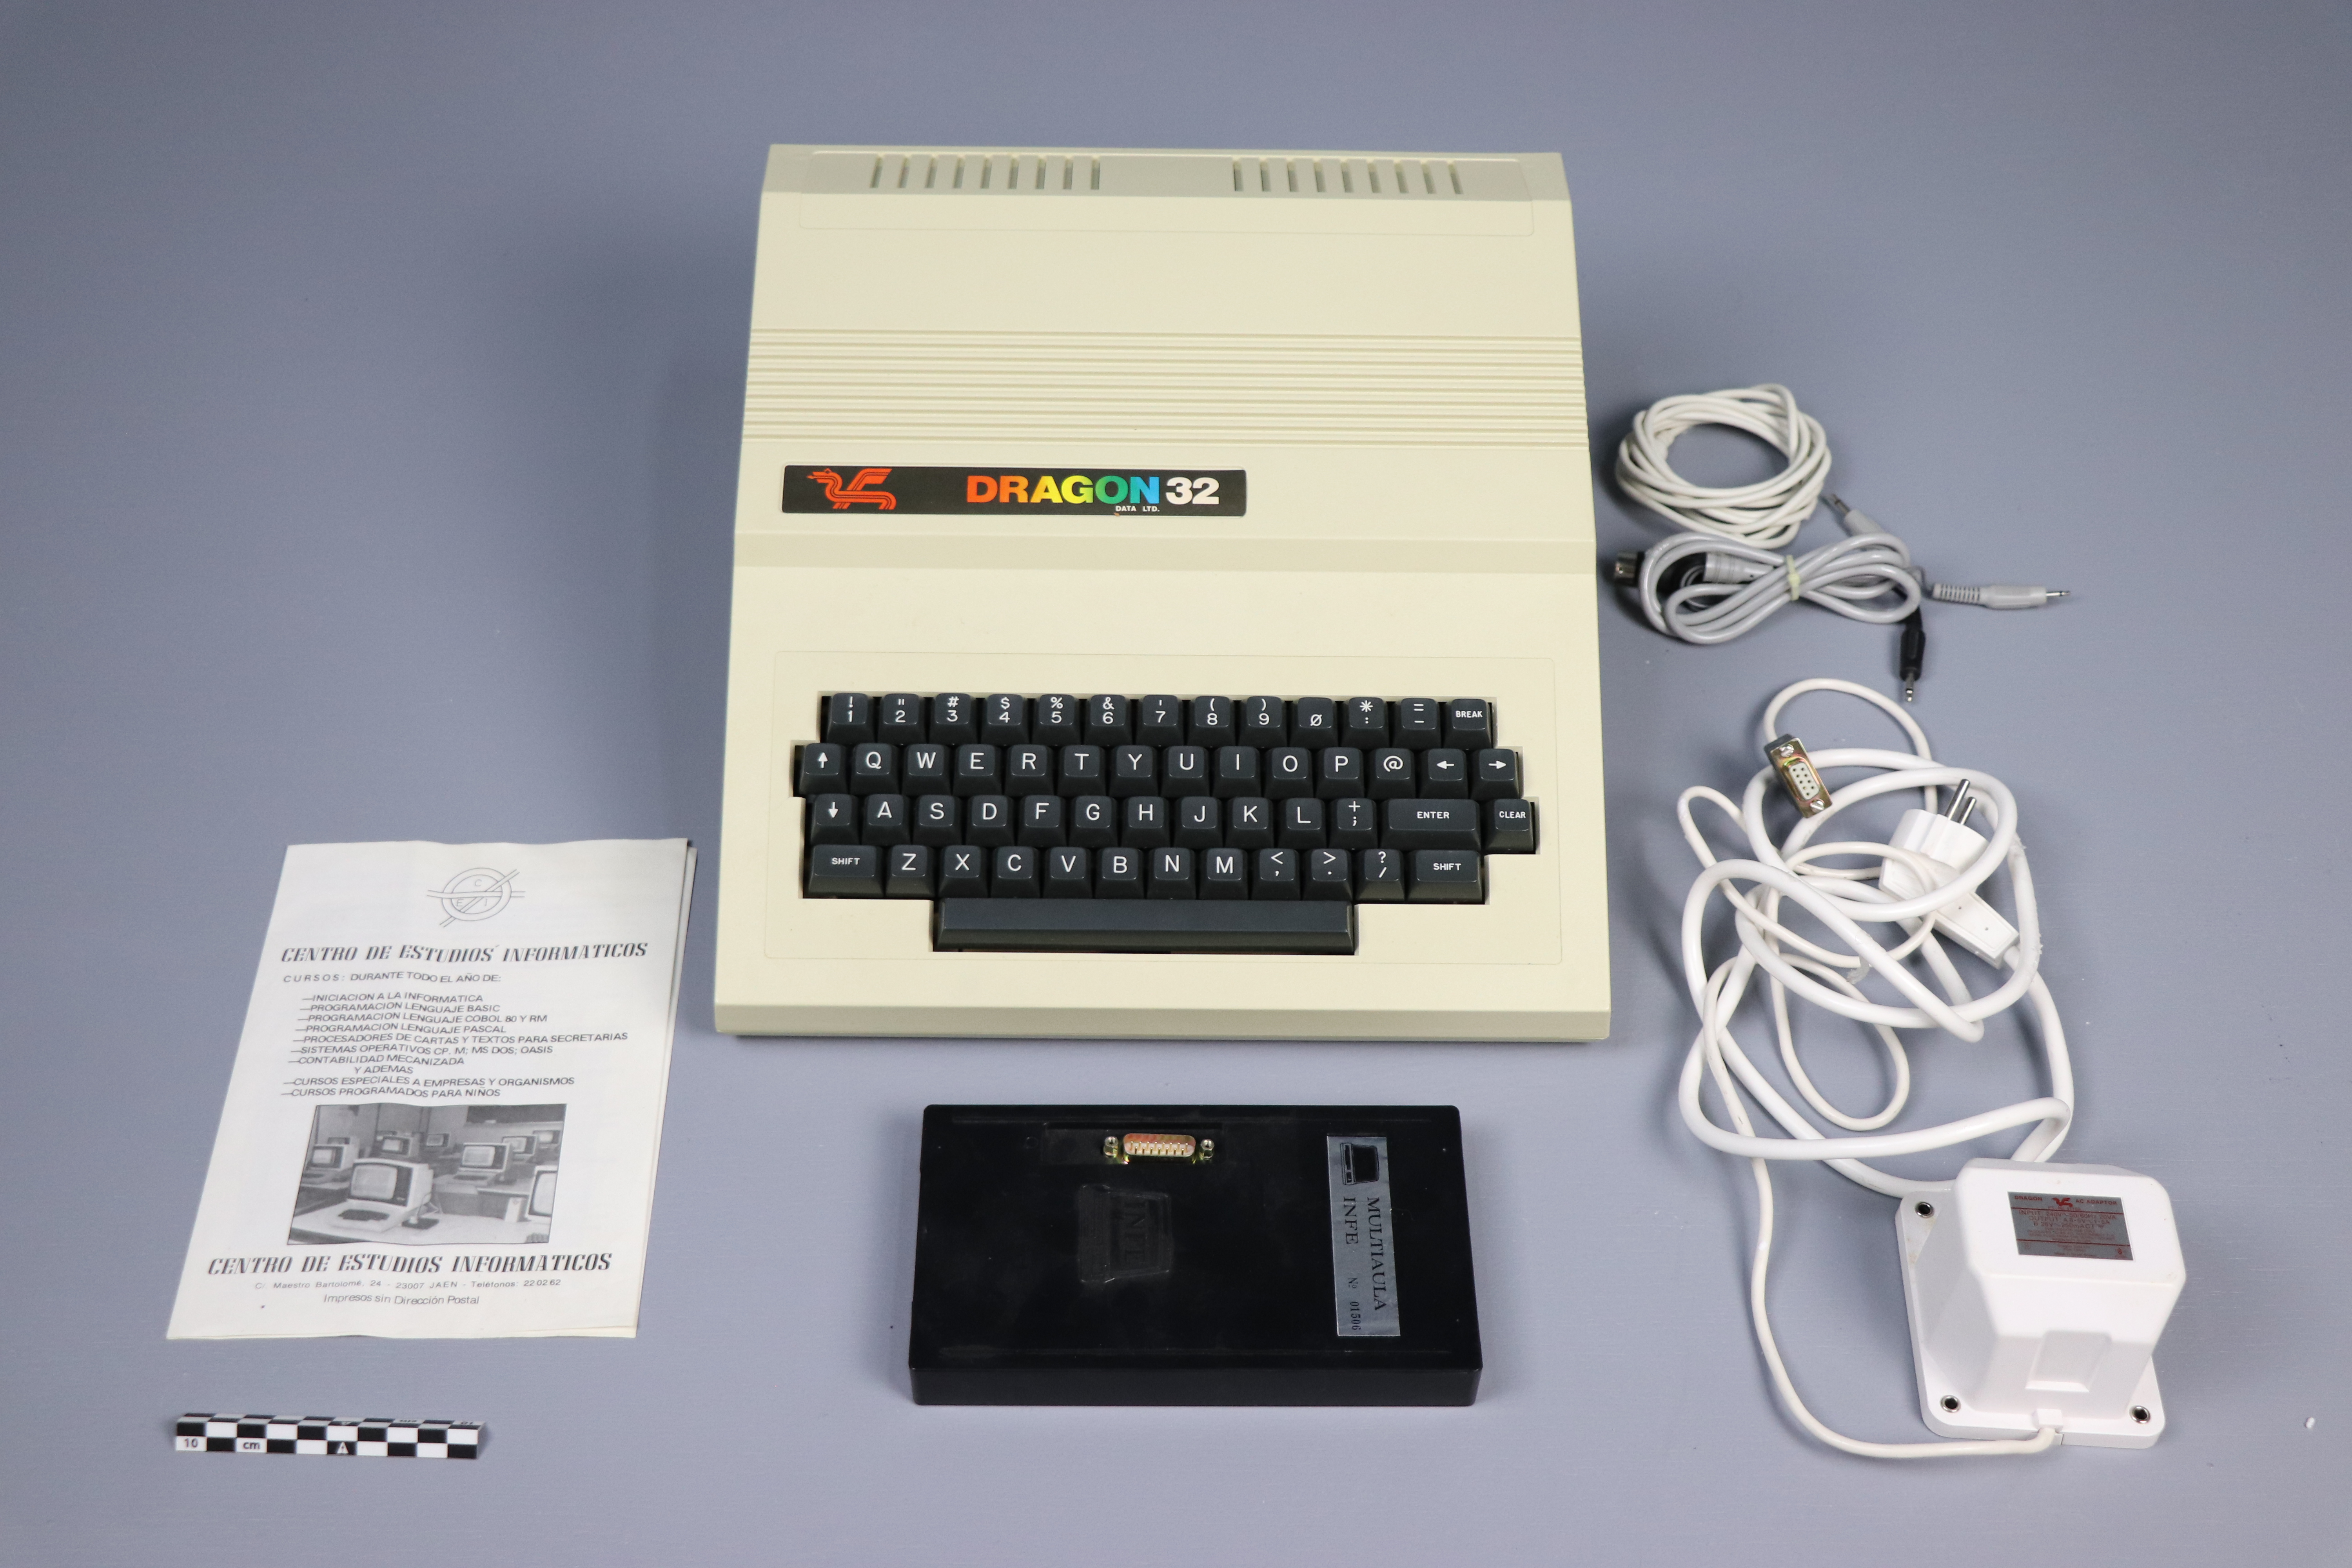 Computadora DRAGOn de los años 80 en exposición